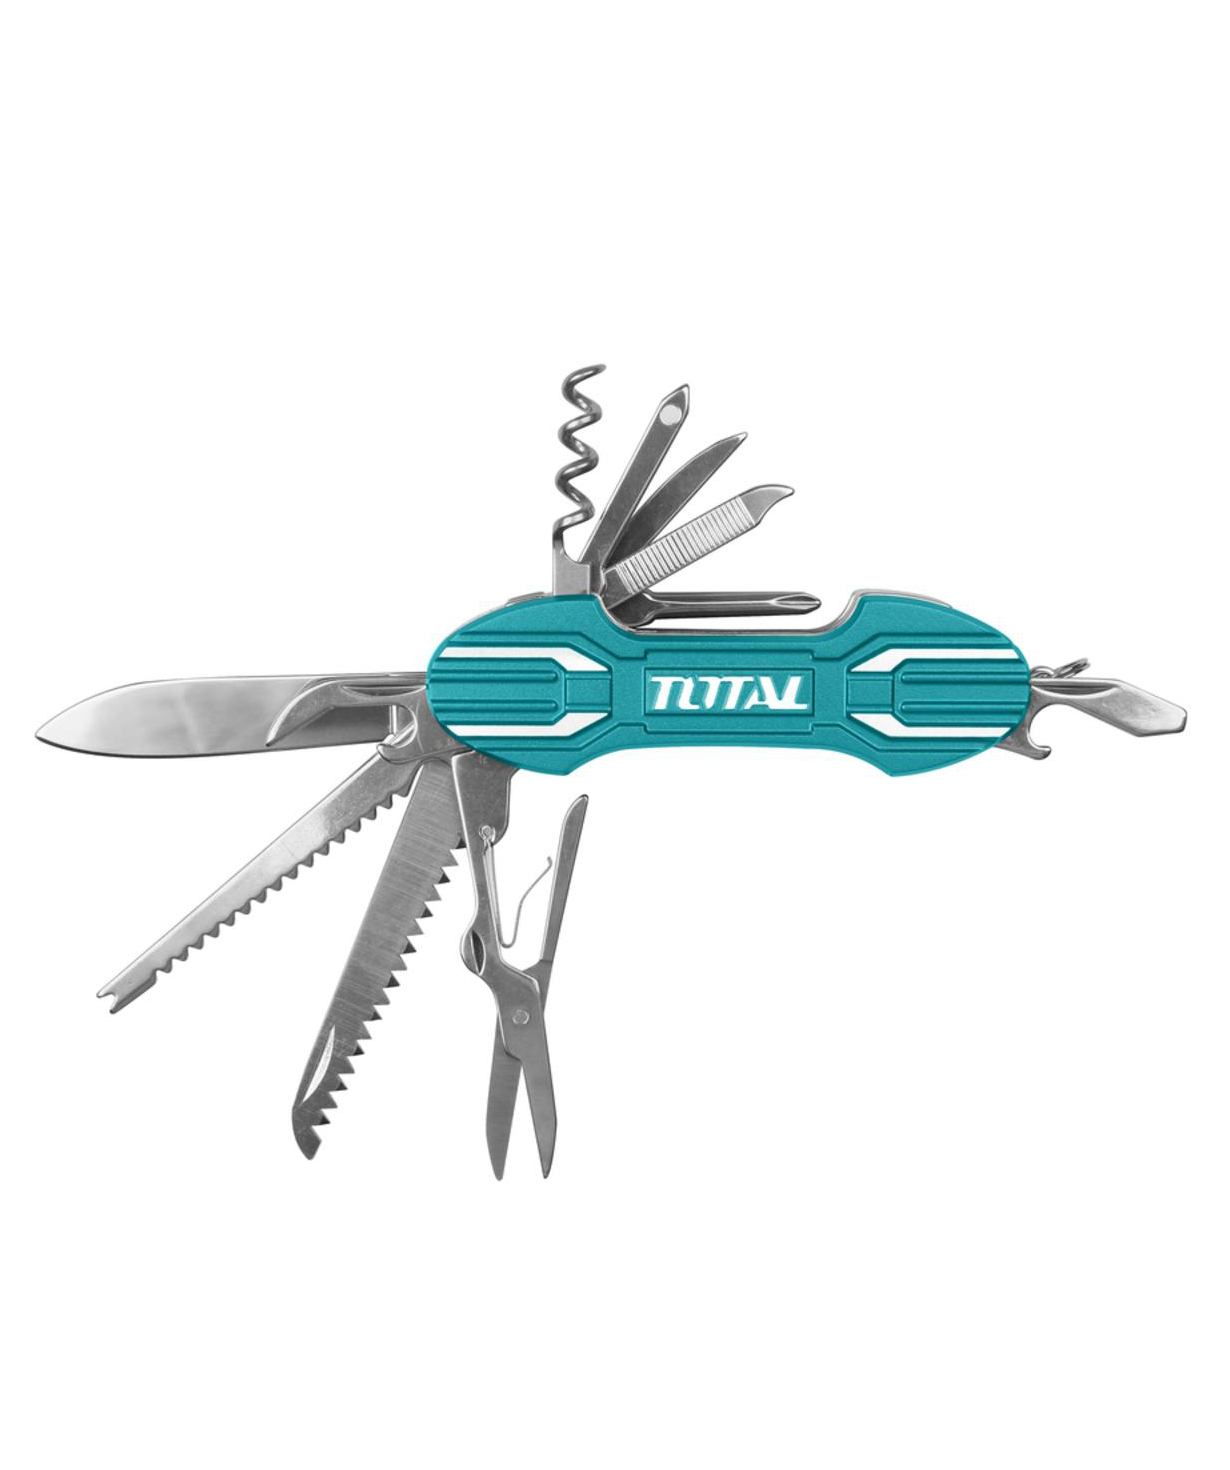 Set `Total Tools` of tools №11